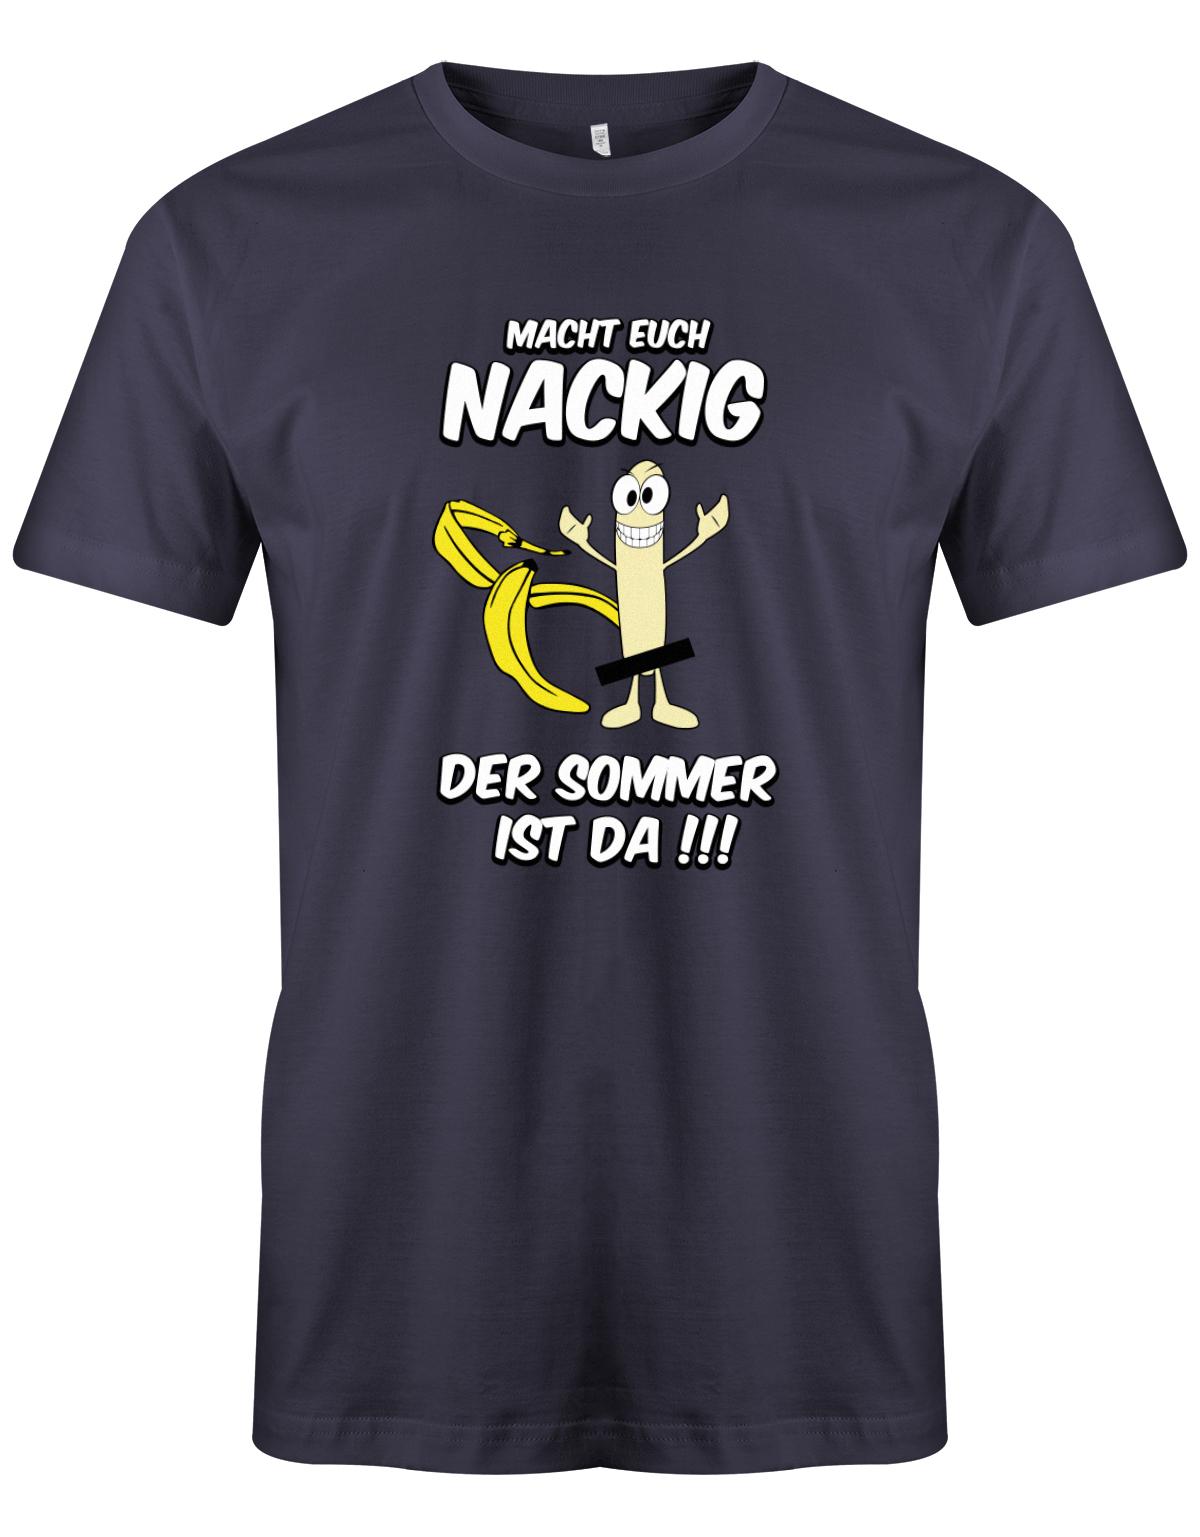 Macht-euch-nackig-dder-Sommer-ist-da-Herren-Shirt-navy